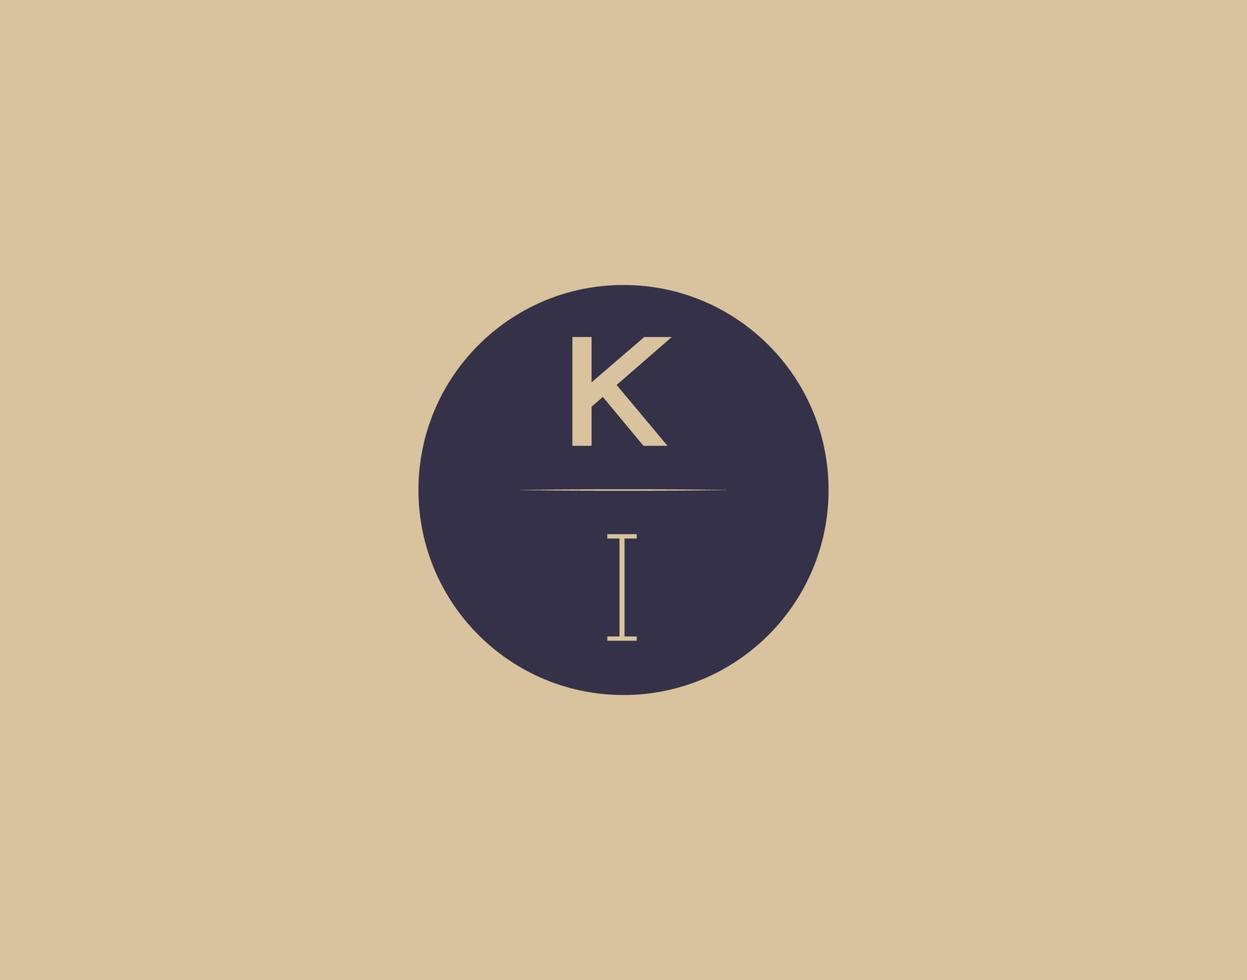 KI letter modern elegant logo design vector images